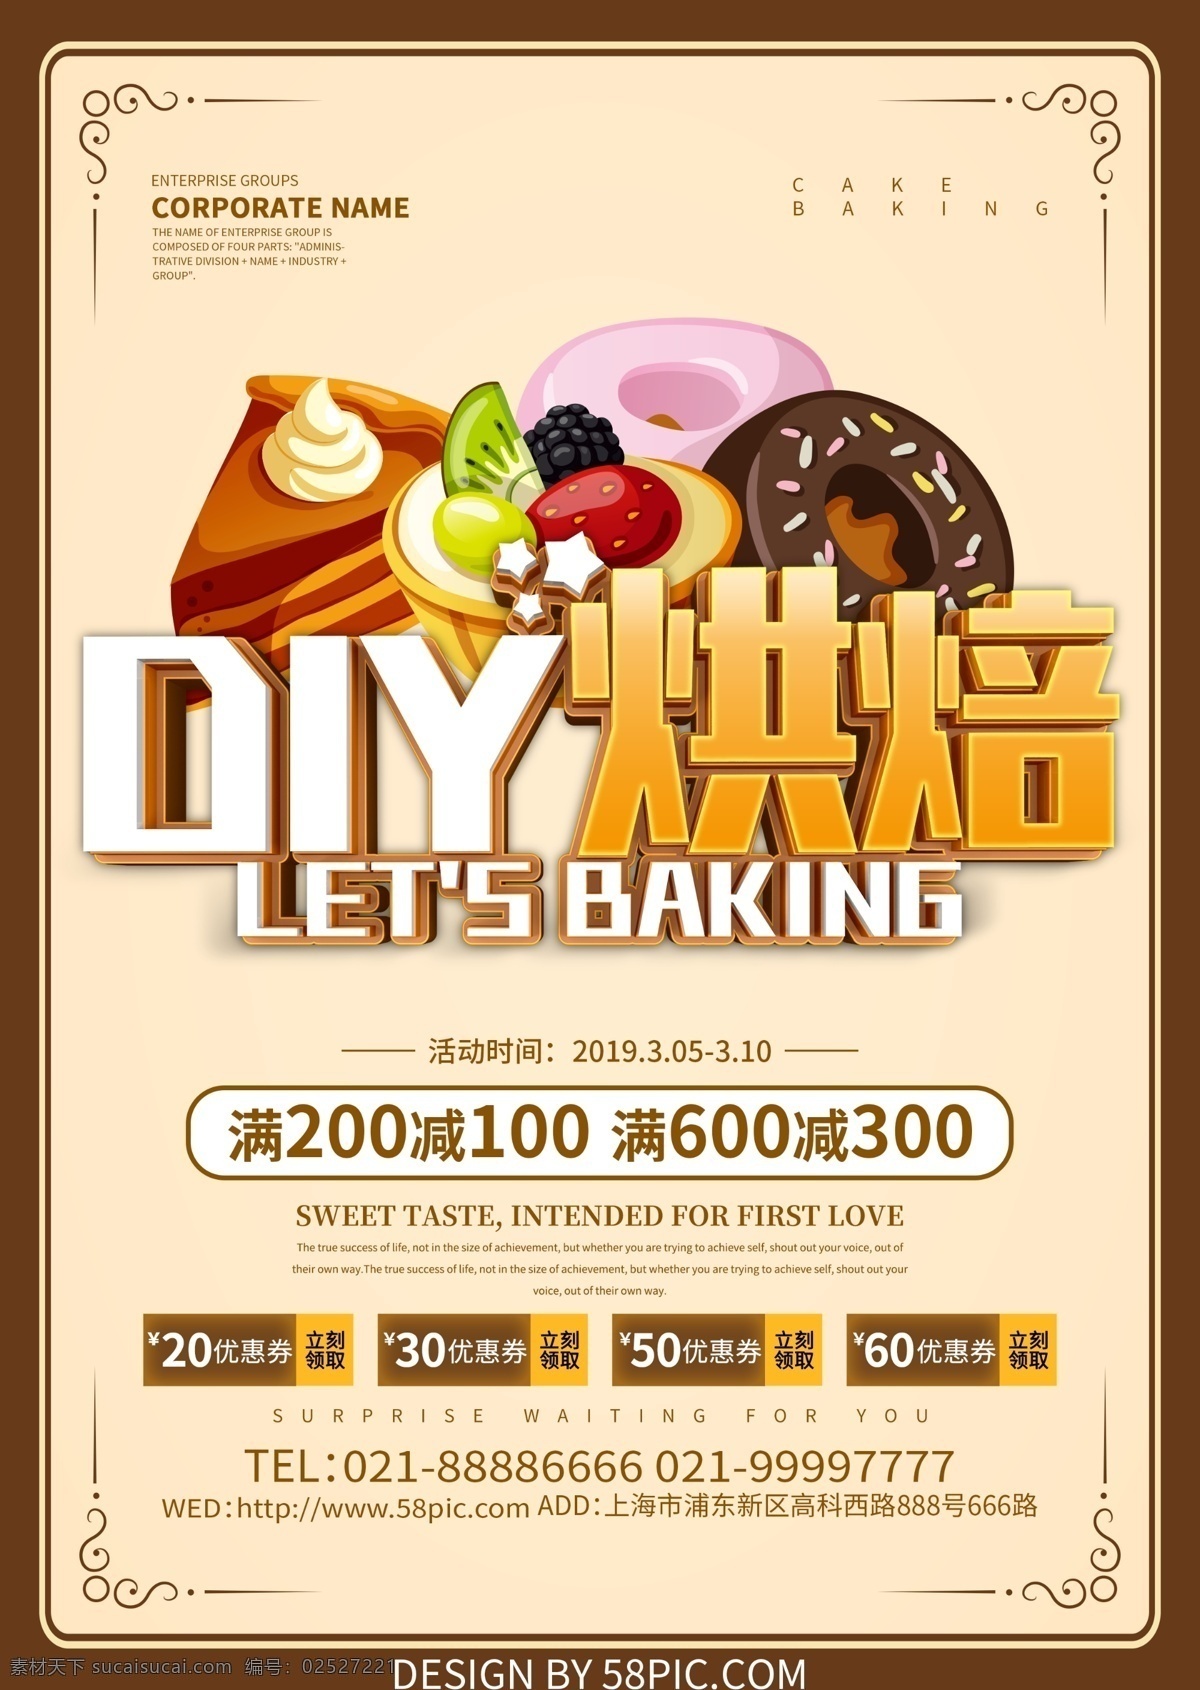 diy 烘焙 蛋糕 宣传单 diy烘焙 蛋糕烘焙 烘焙工坊 甜品 烘焙宣传单 烘焙单页 烘焙dm单 烘焙海报